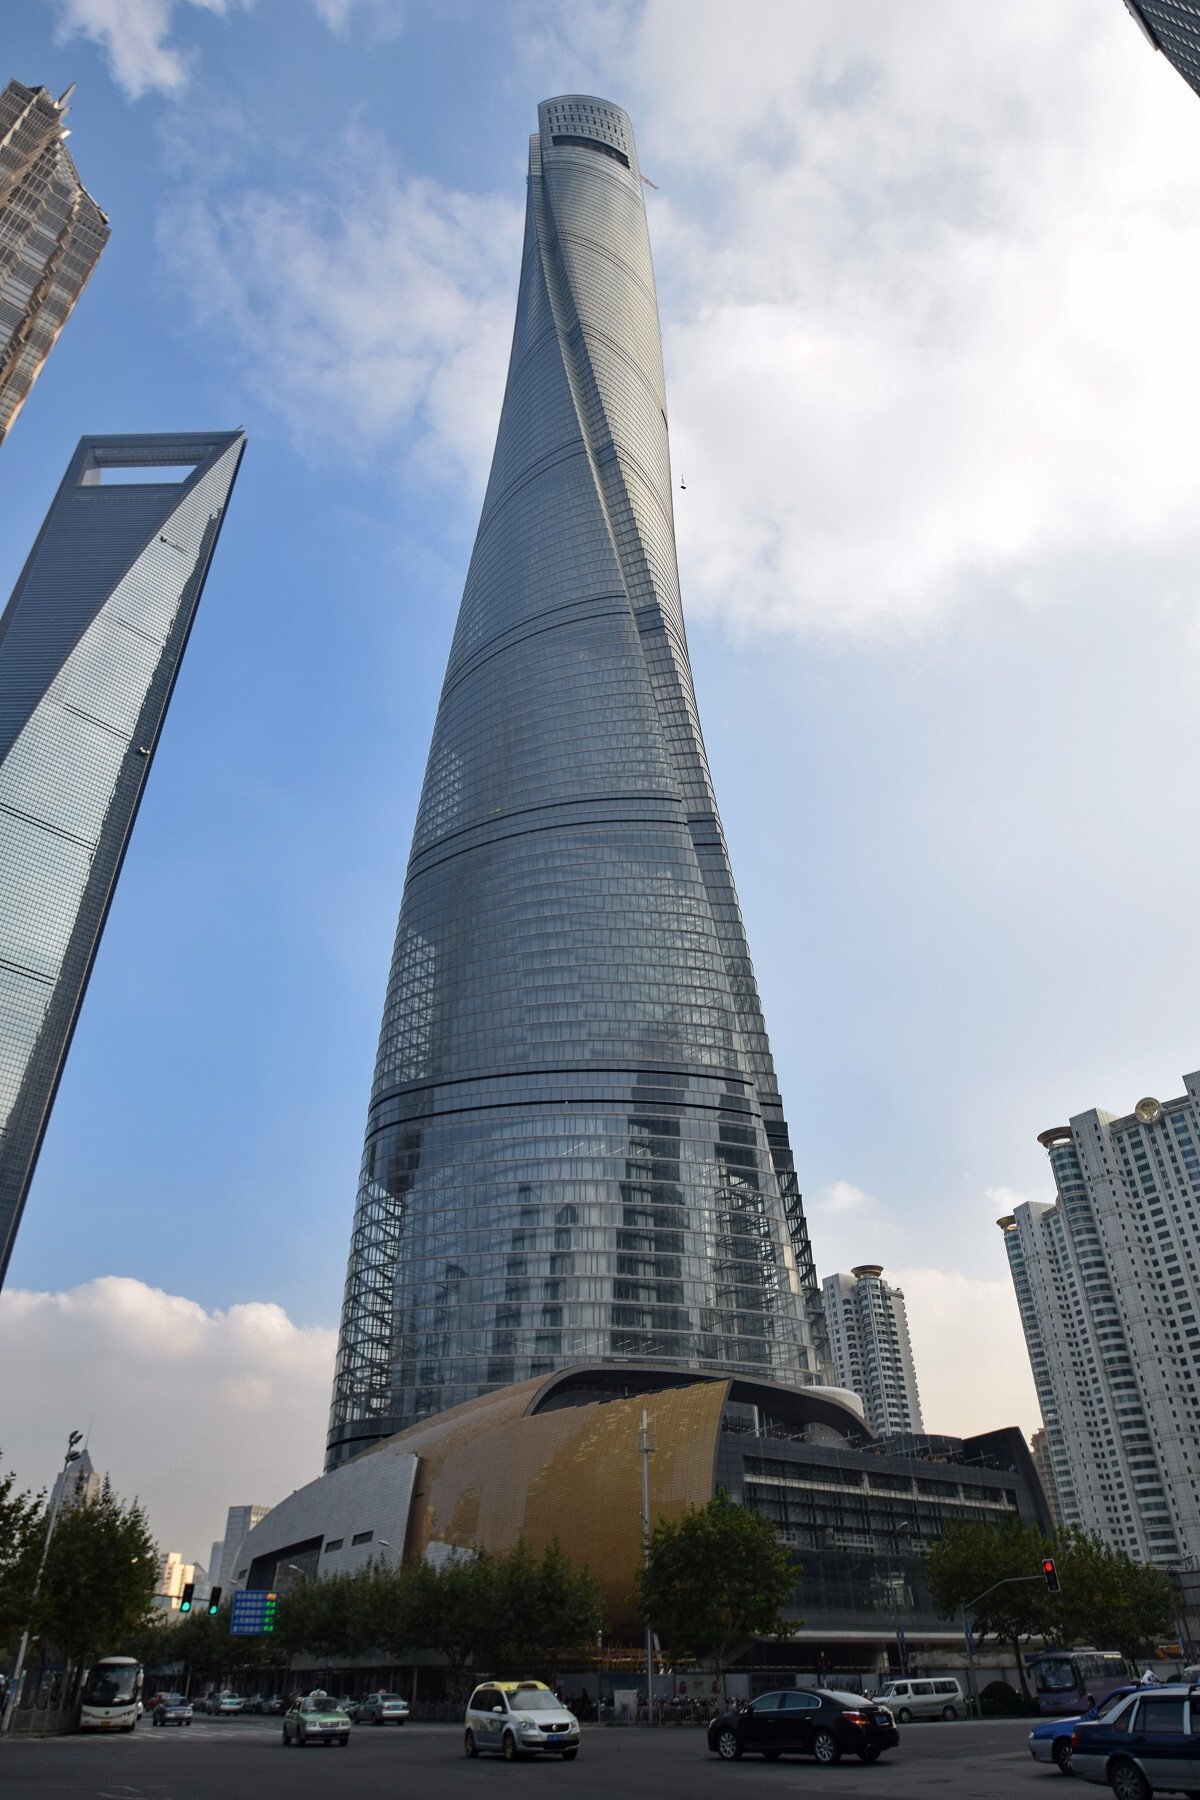 Tòa nhà cao nhất Trung Quốc: Thiết kế phức tạp, hơn 100 thang máy siêu tốc - Ảnh 3.